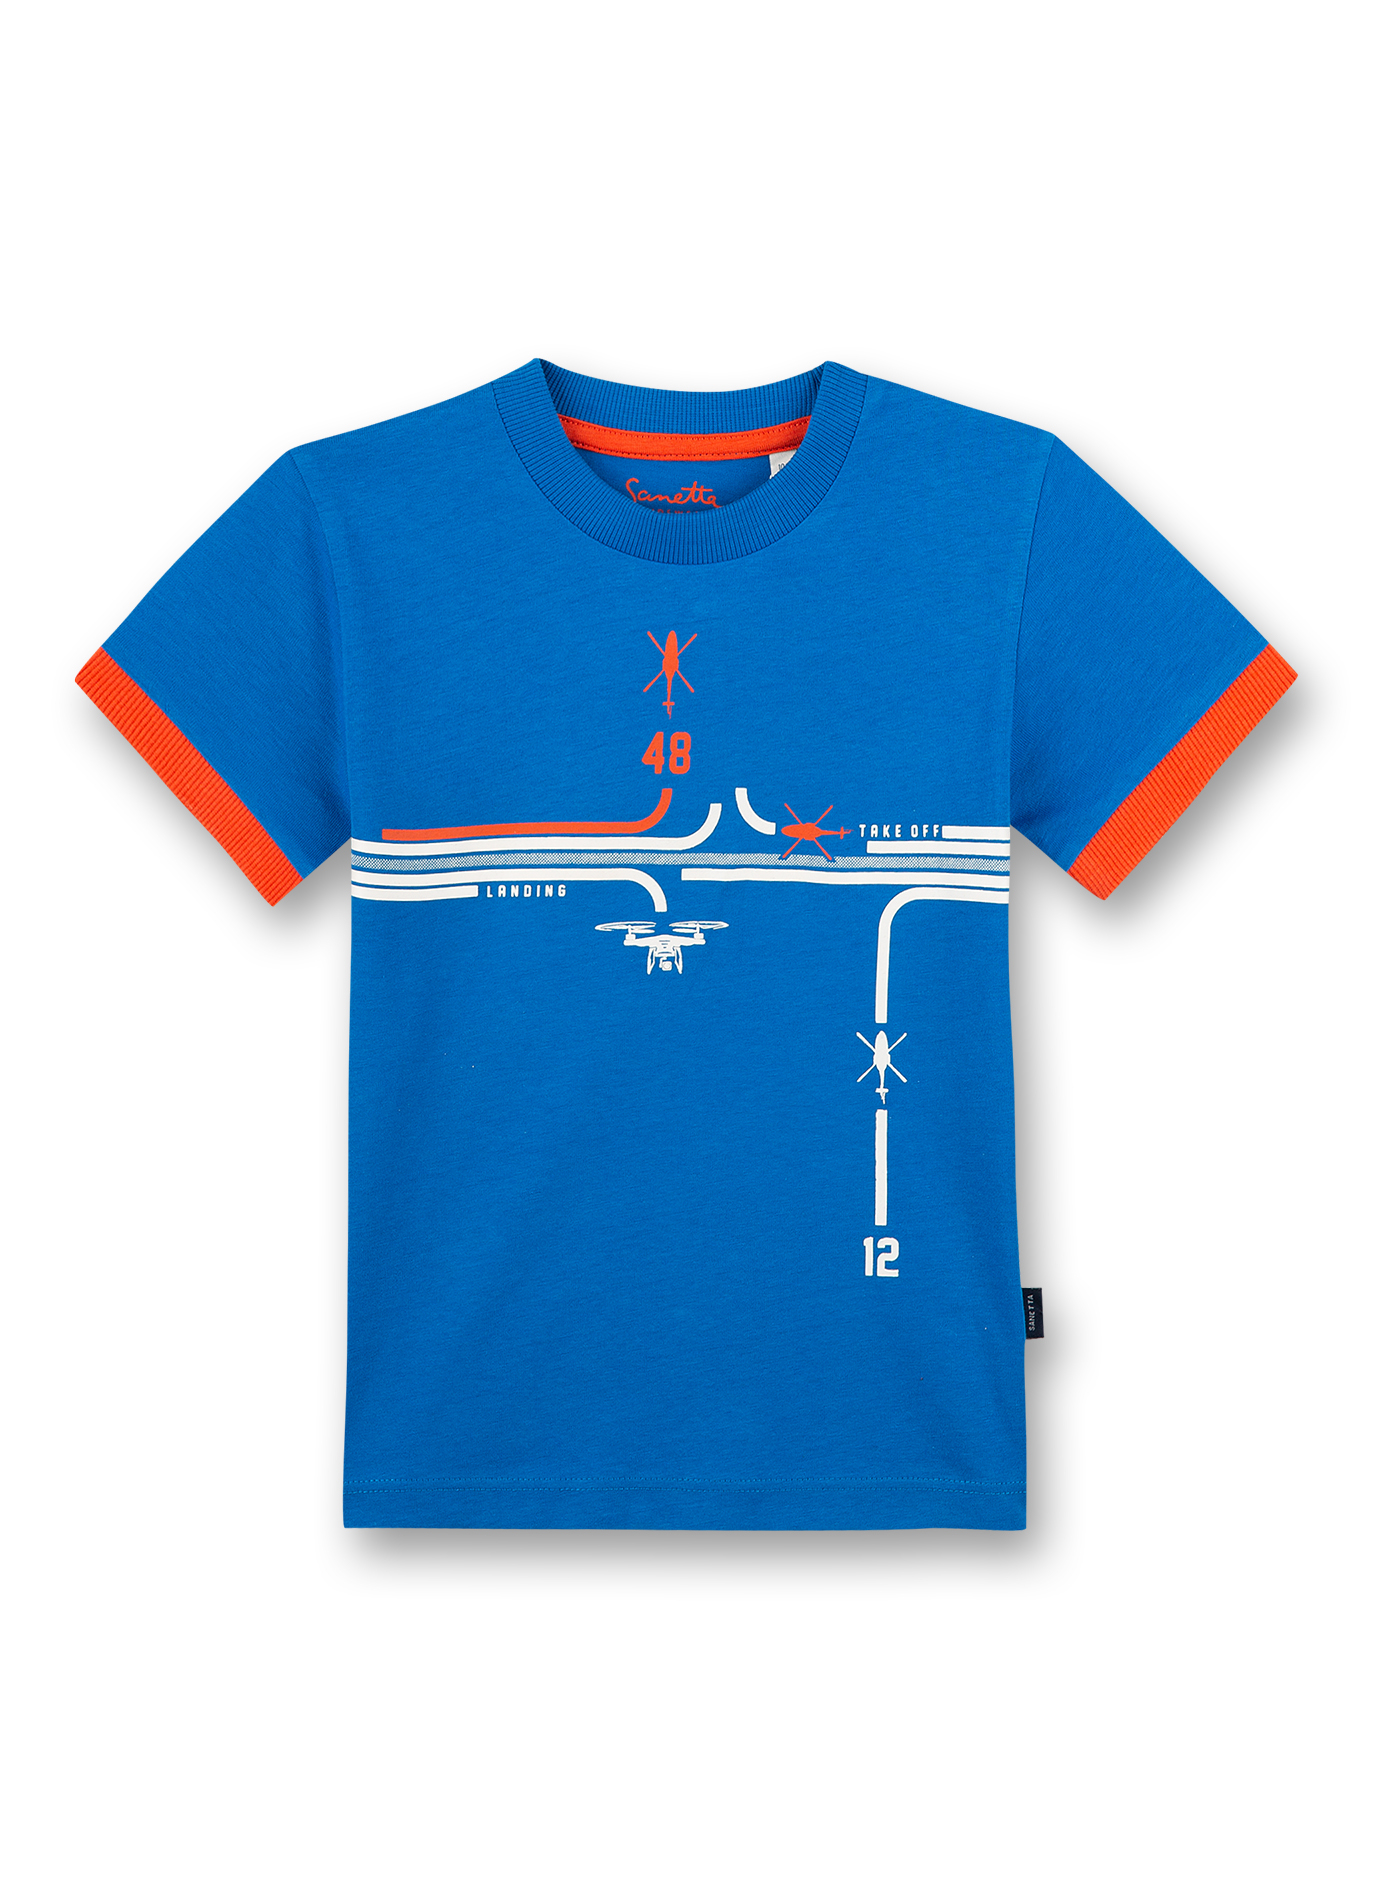 Jungen T-Shirt Blau Air Space